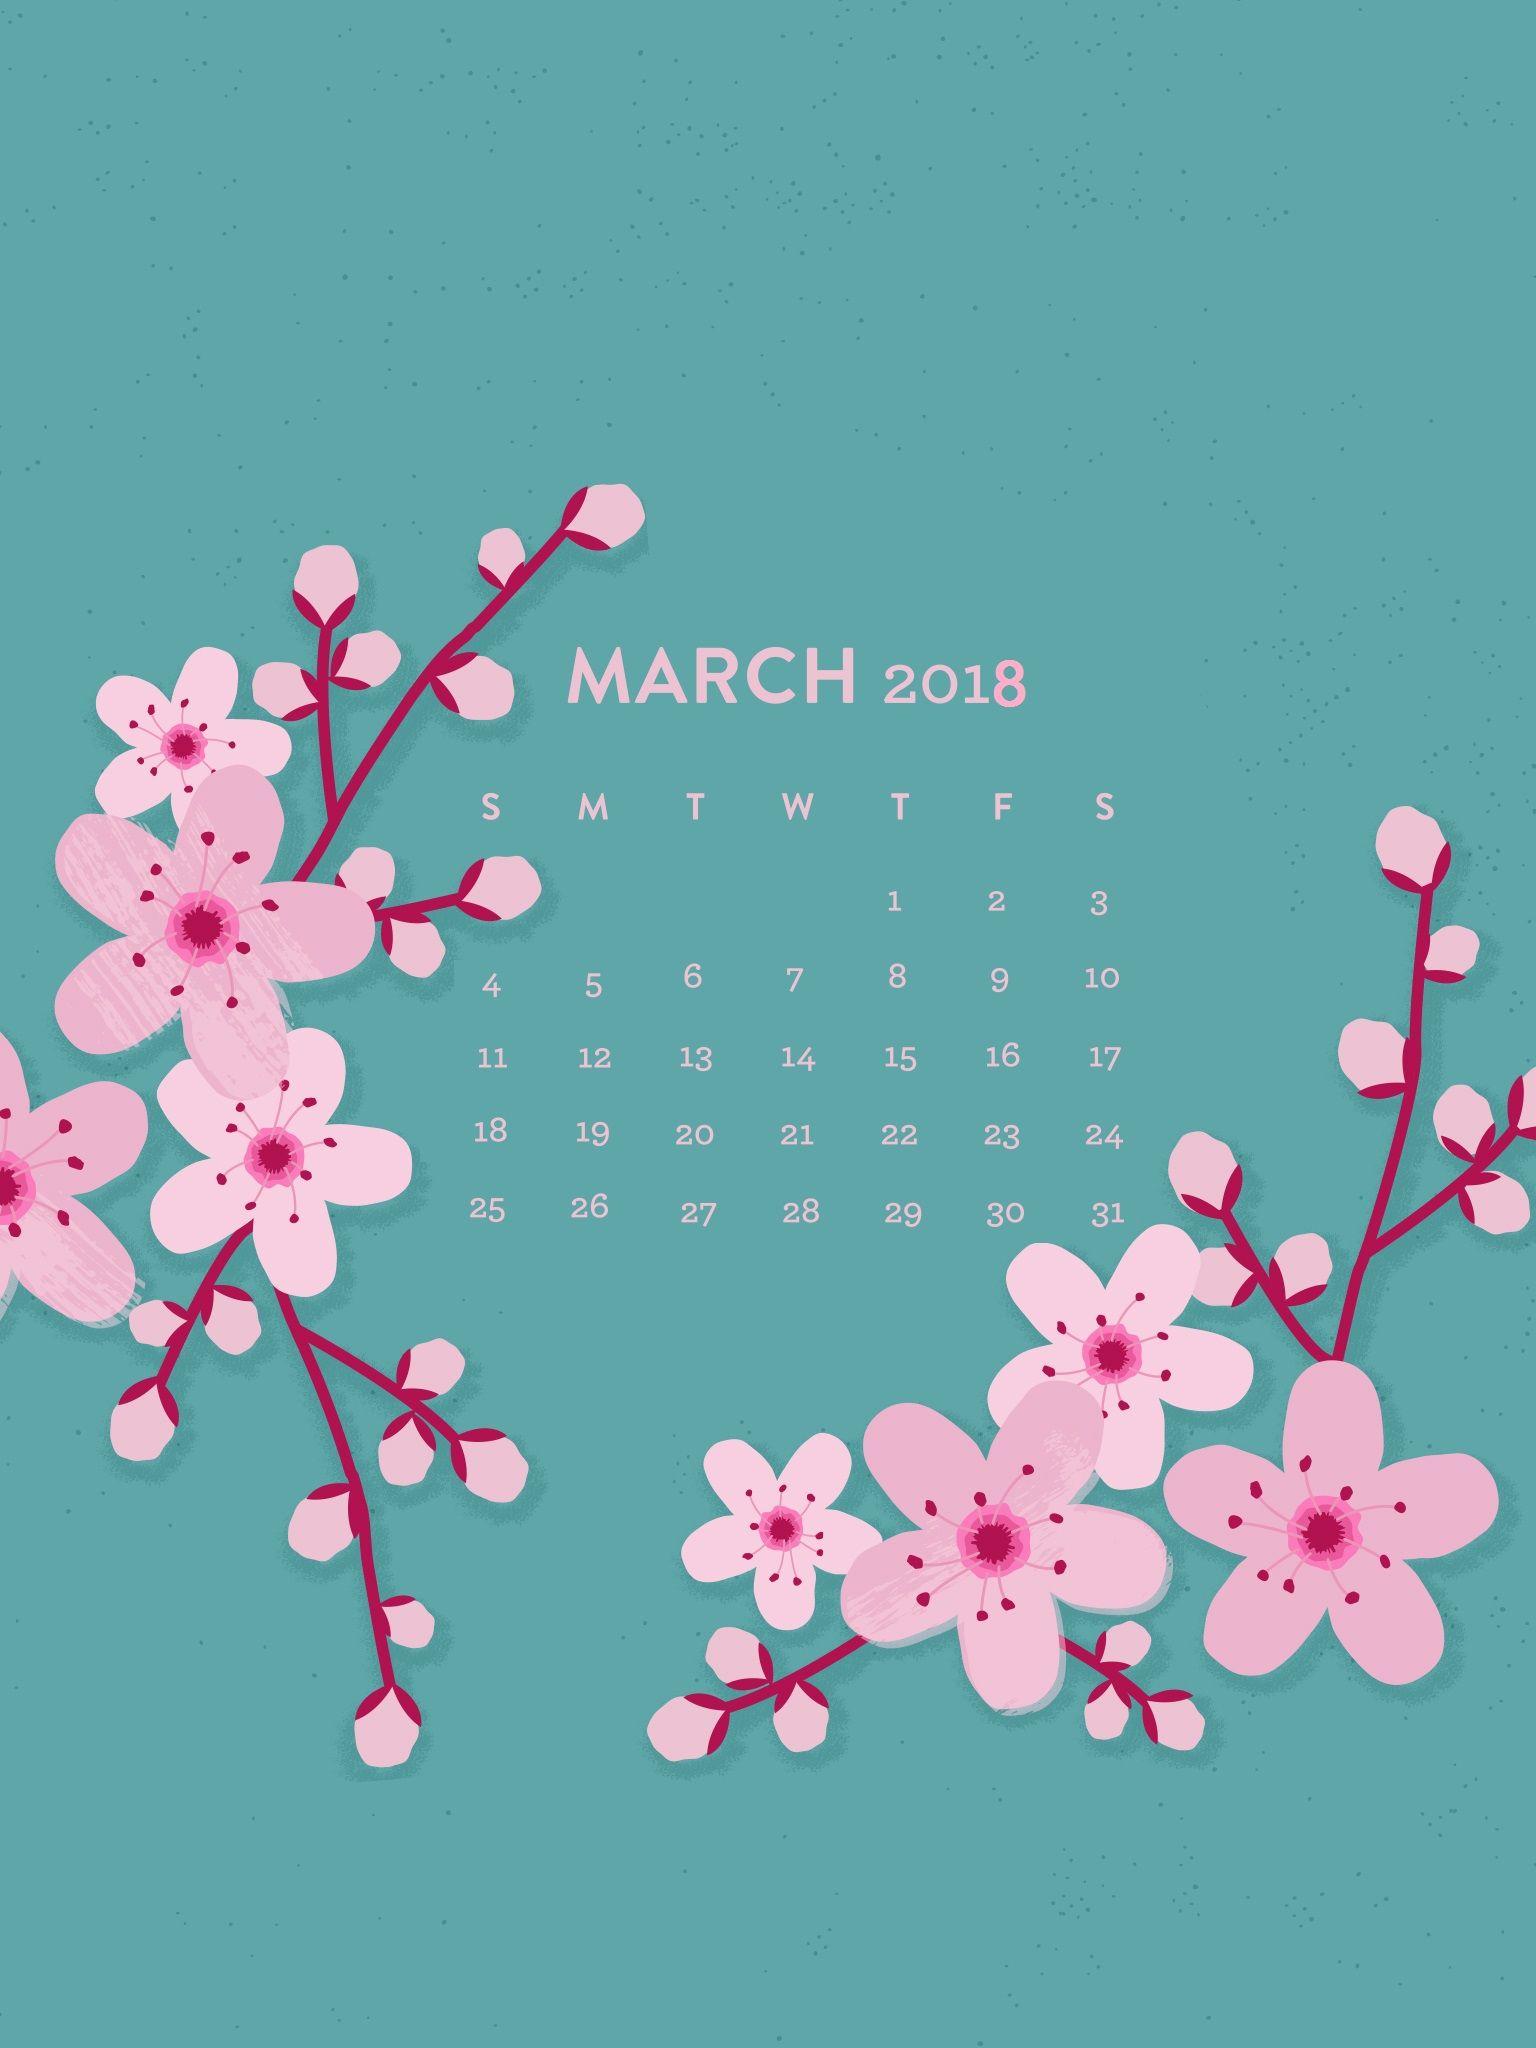 March 2018 iPhone Wallpaper Calendar